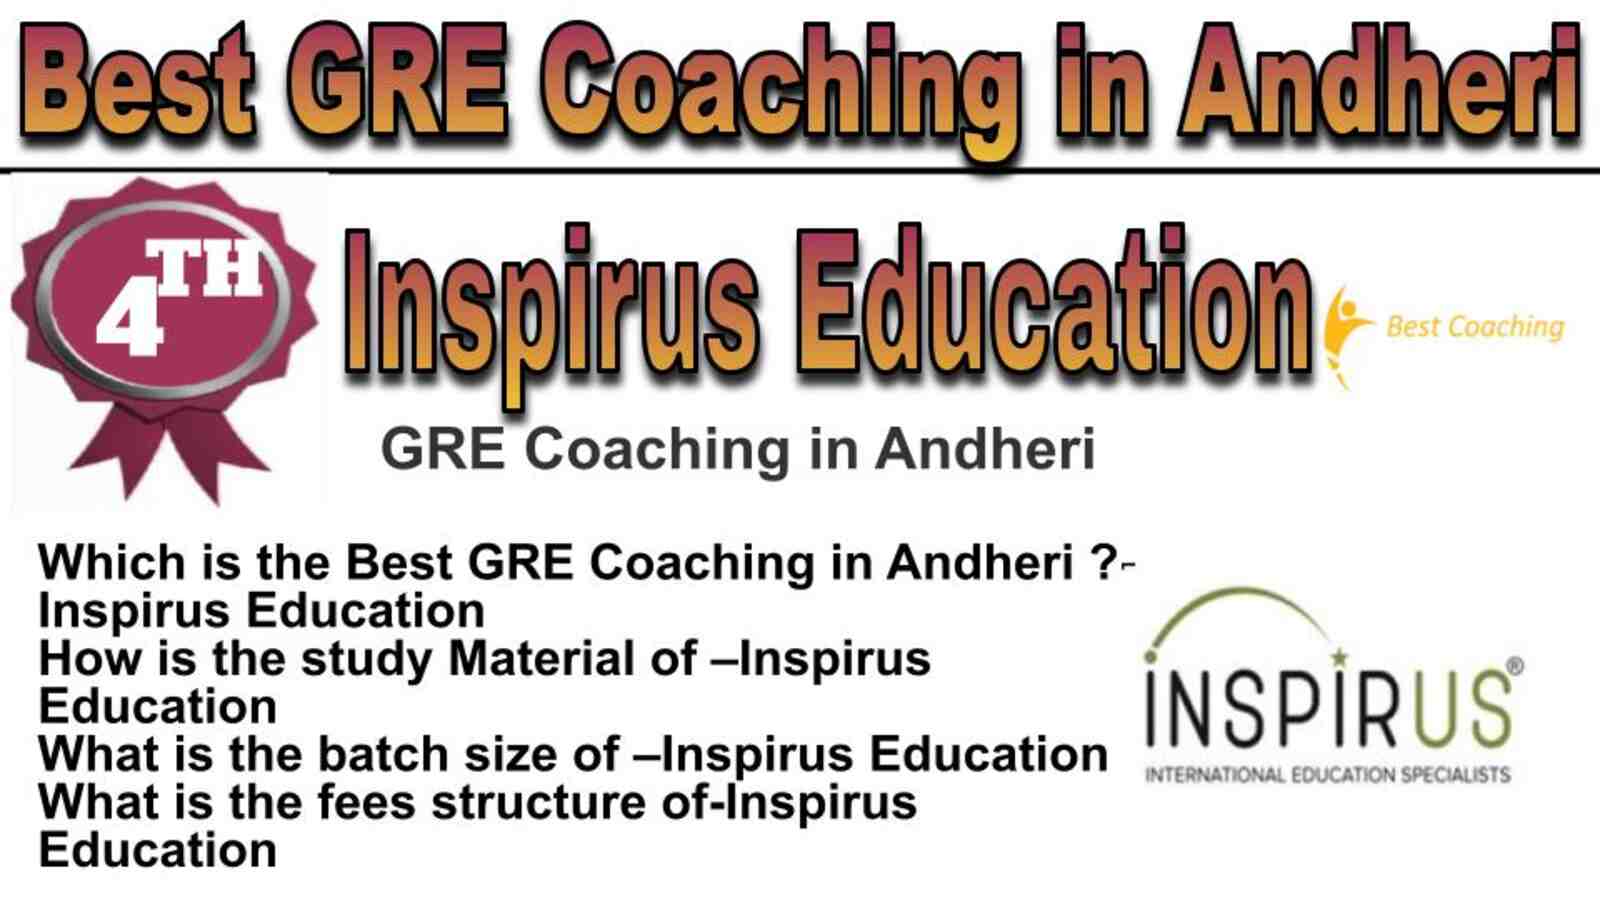 Rank 4 best GRE coaching in Andheri